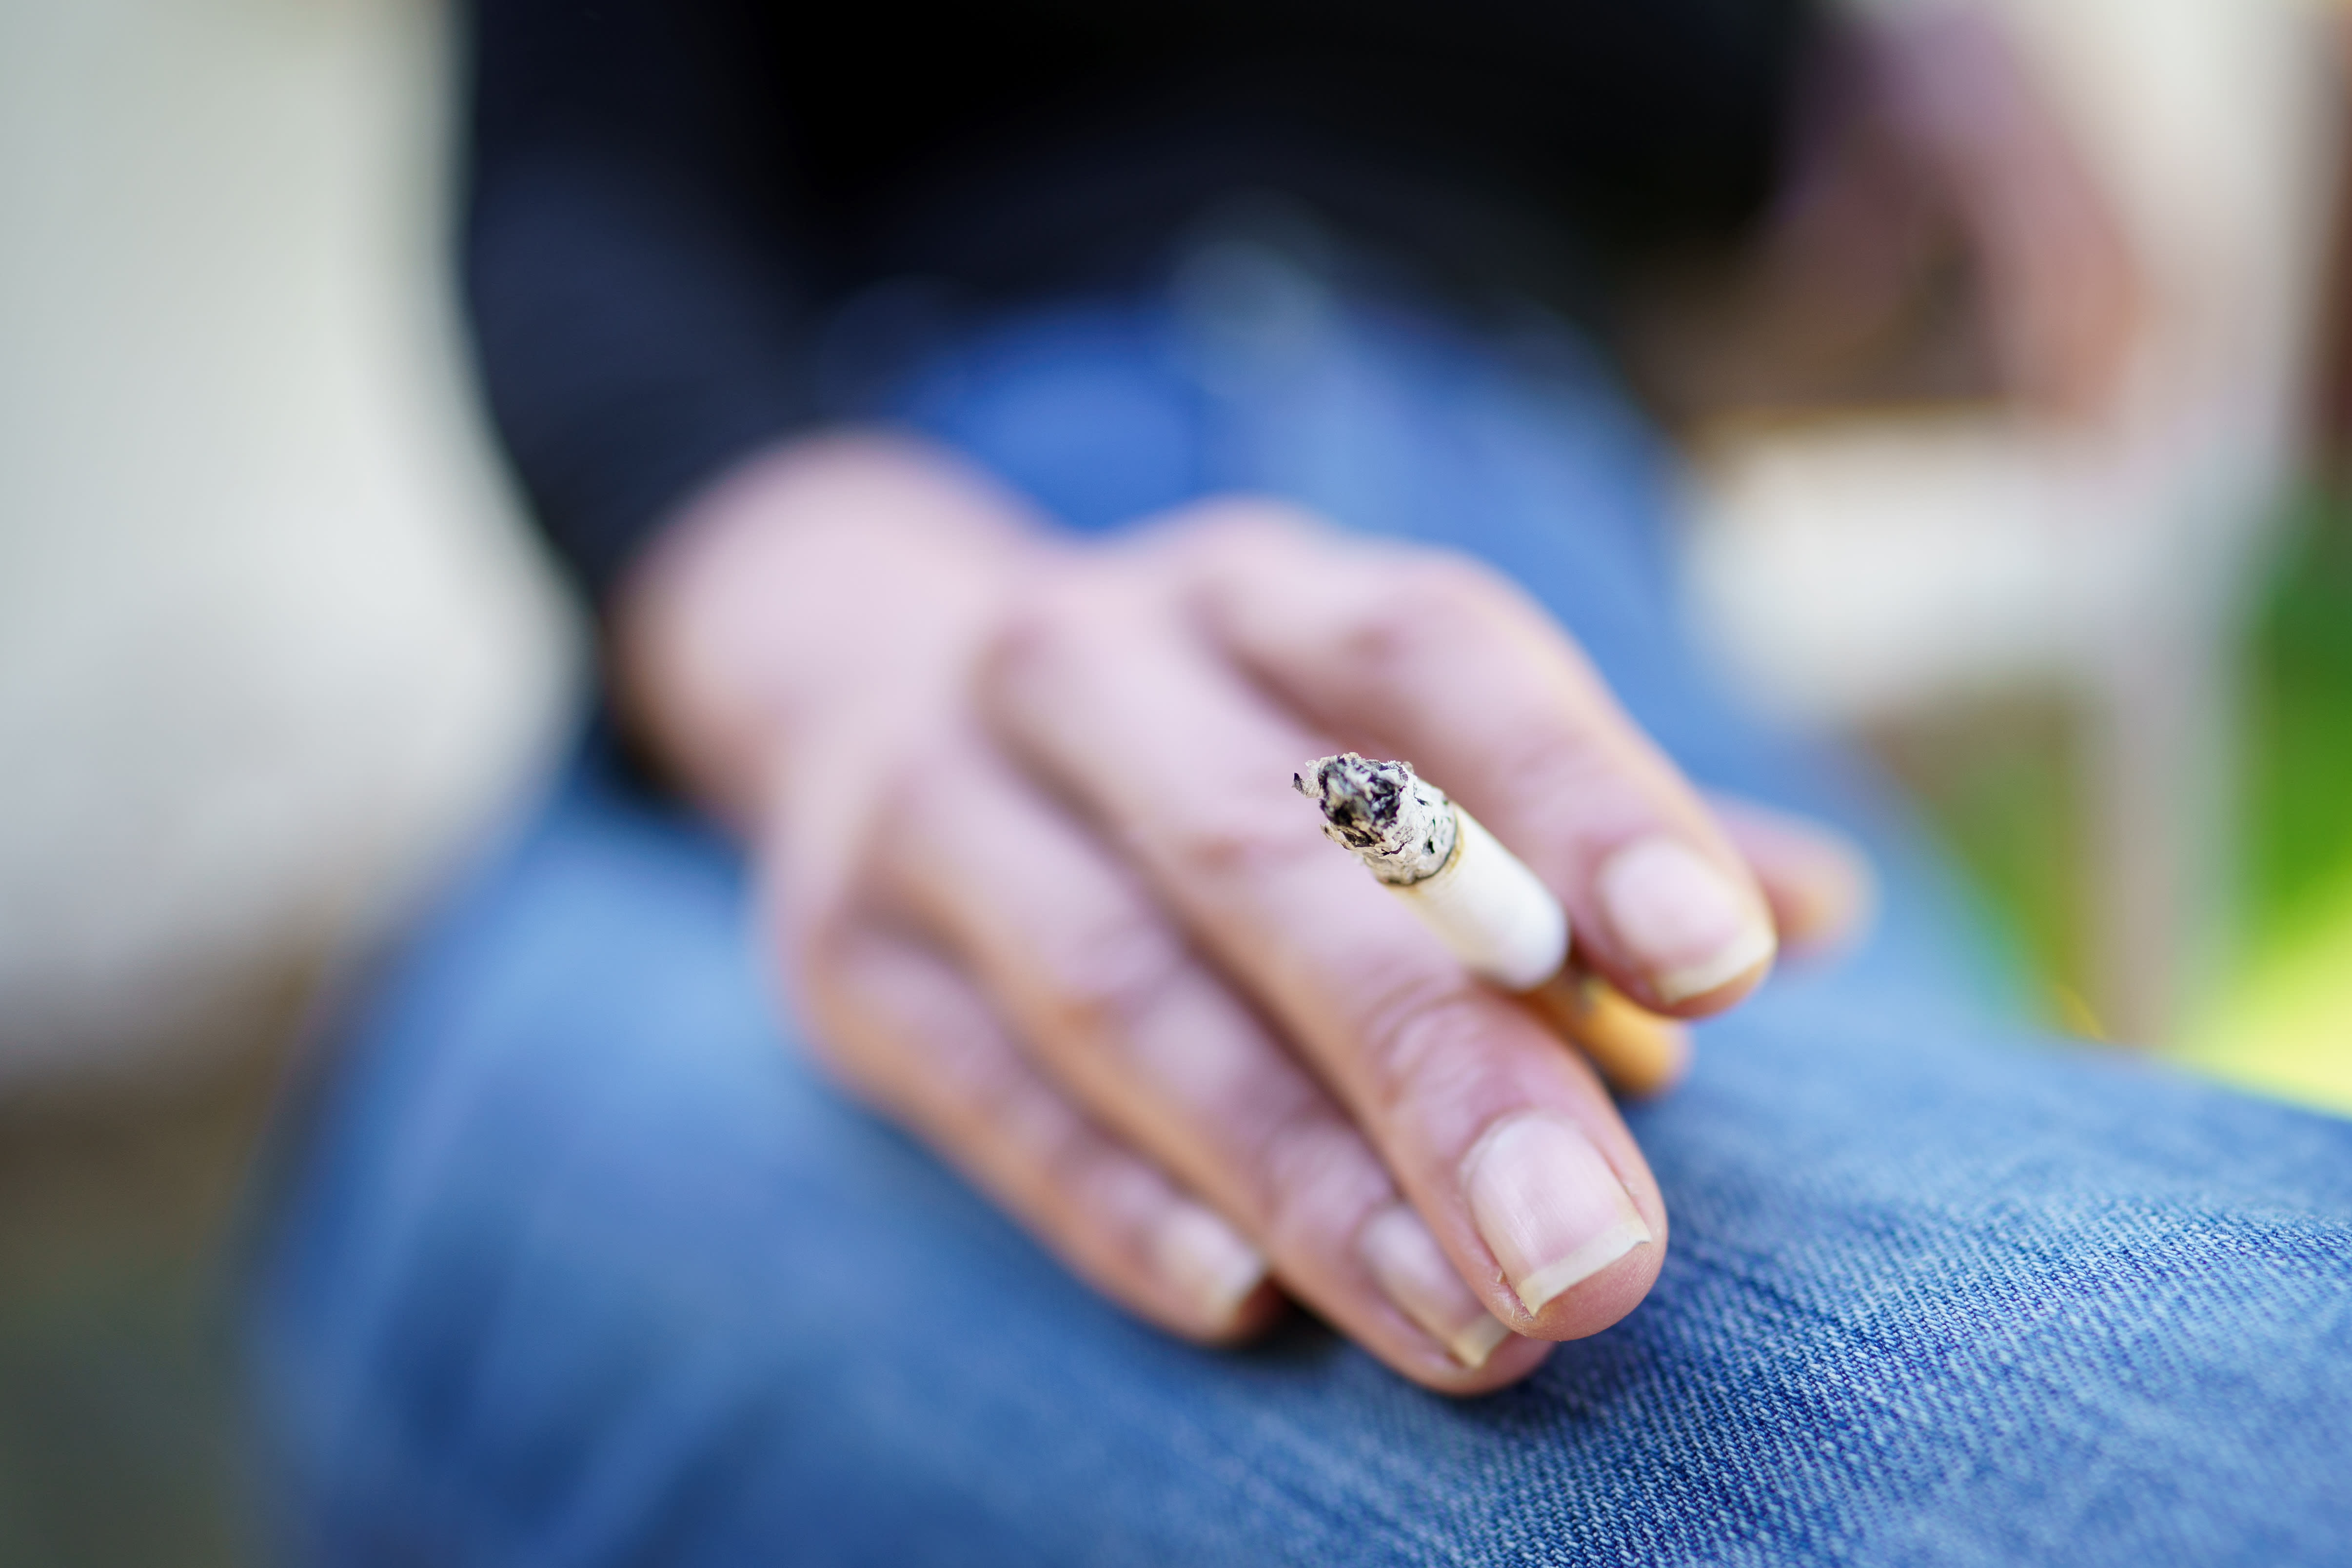 Zoll vermutet Steuerbetrug bei Zigaretteneinfuhren in Höhe von 2 Millionen Euro